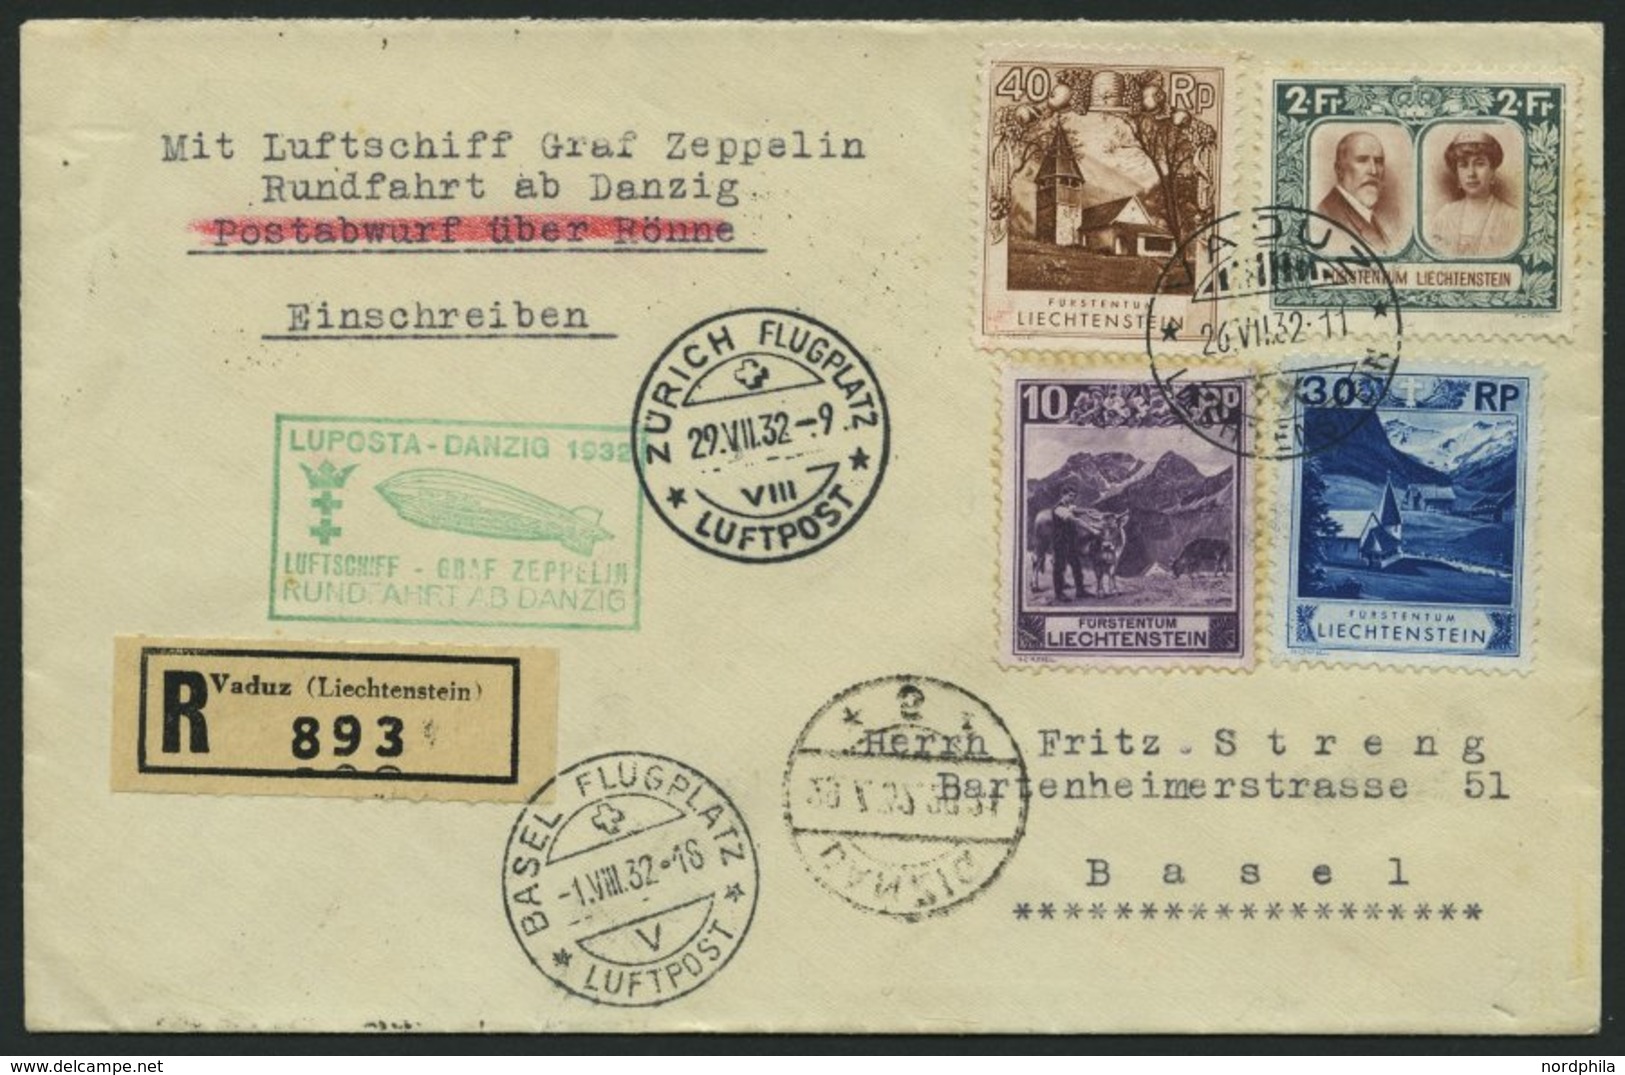 ZULEITUNGSPOST 170Ab BRIEF, Liechtenstien: 1932, Luposta-Rundfahrt, Abgabe Danzig, Einschreibbrief, 2 Fr. Etwas Fleckig  - Luft- Und Zeppelinpost